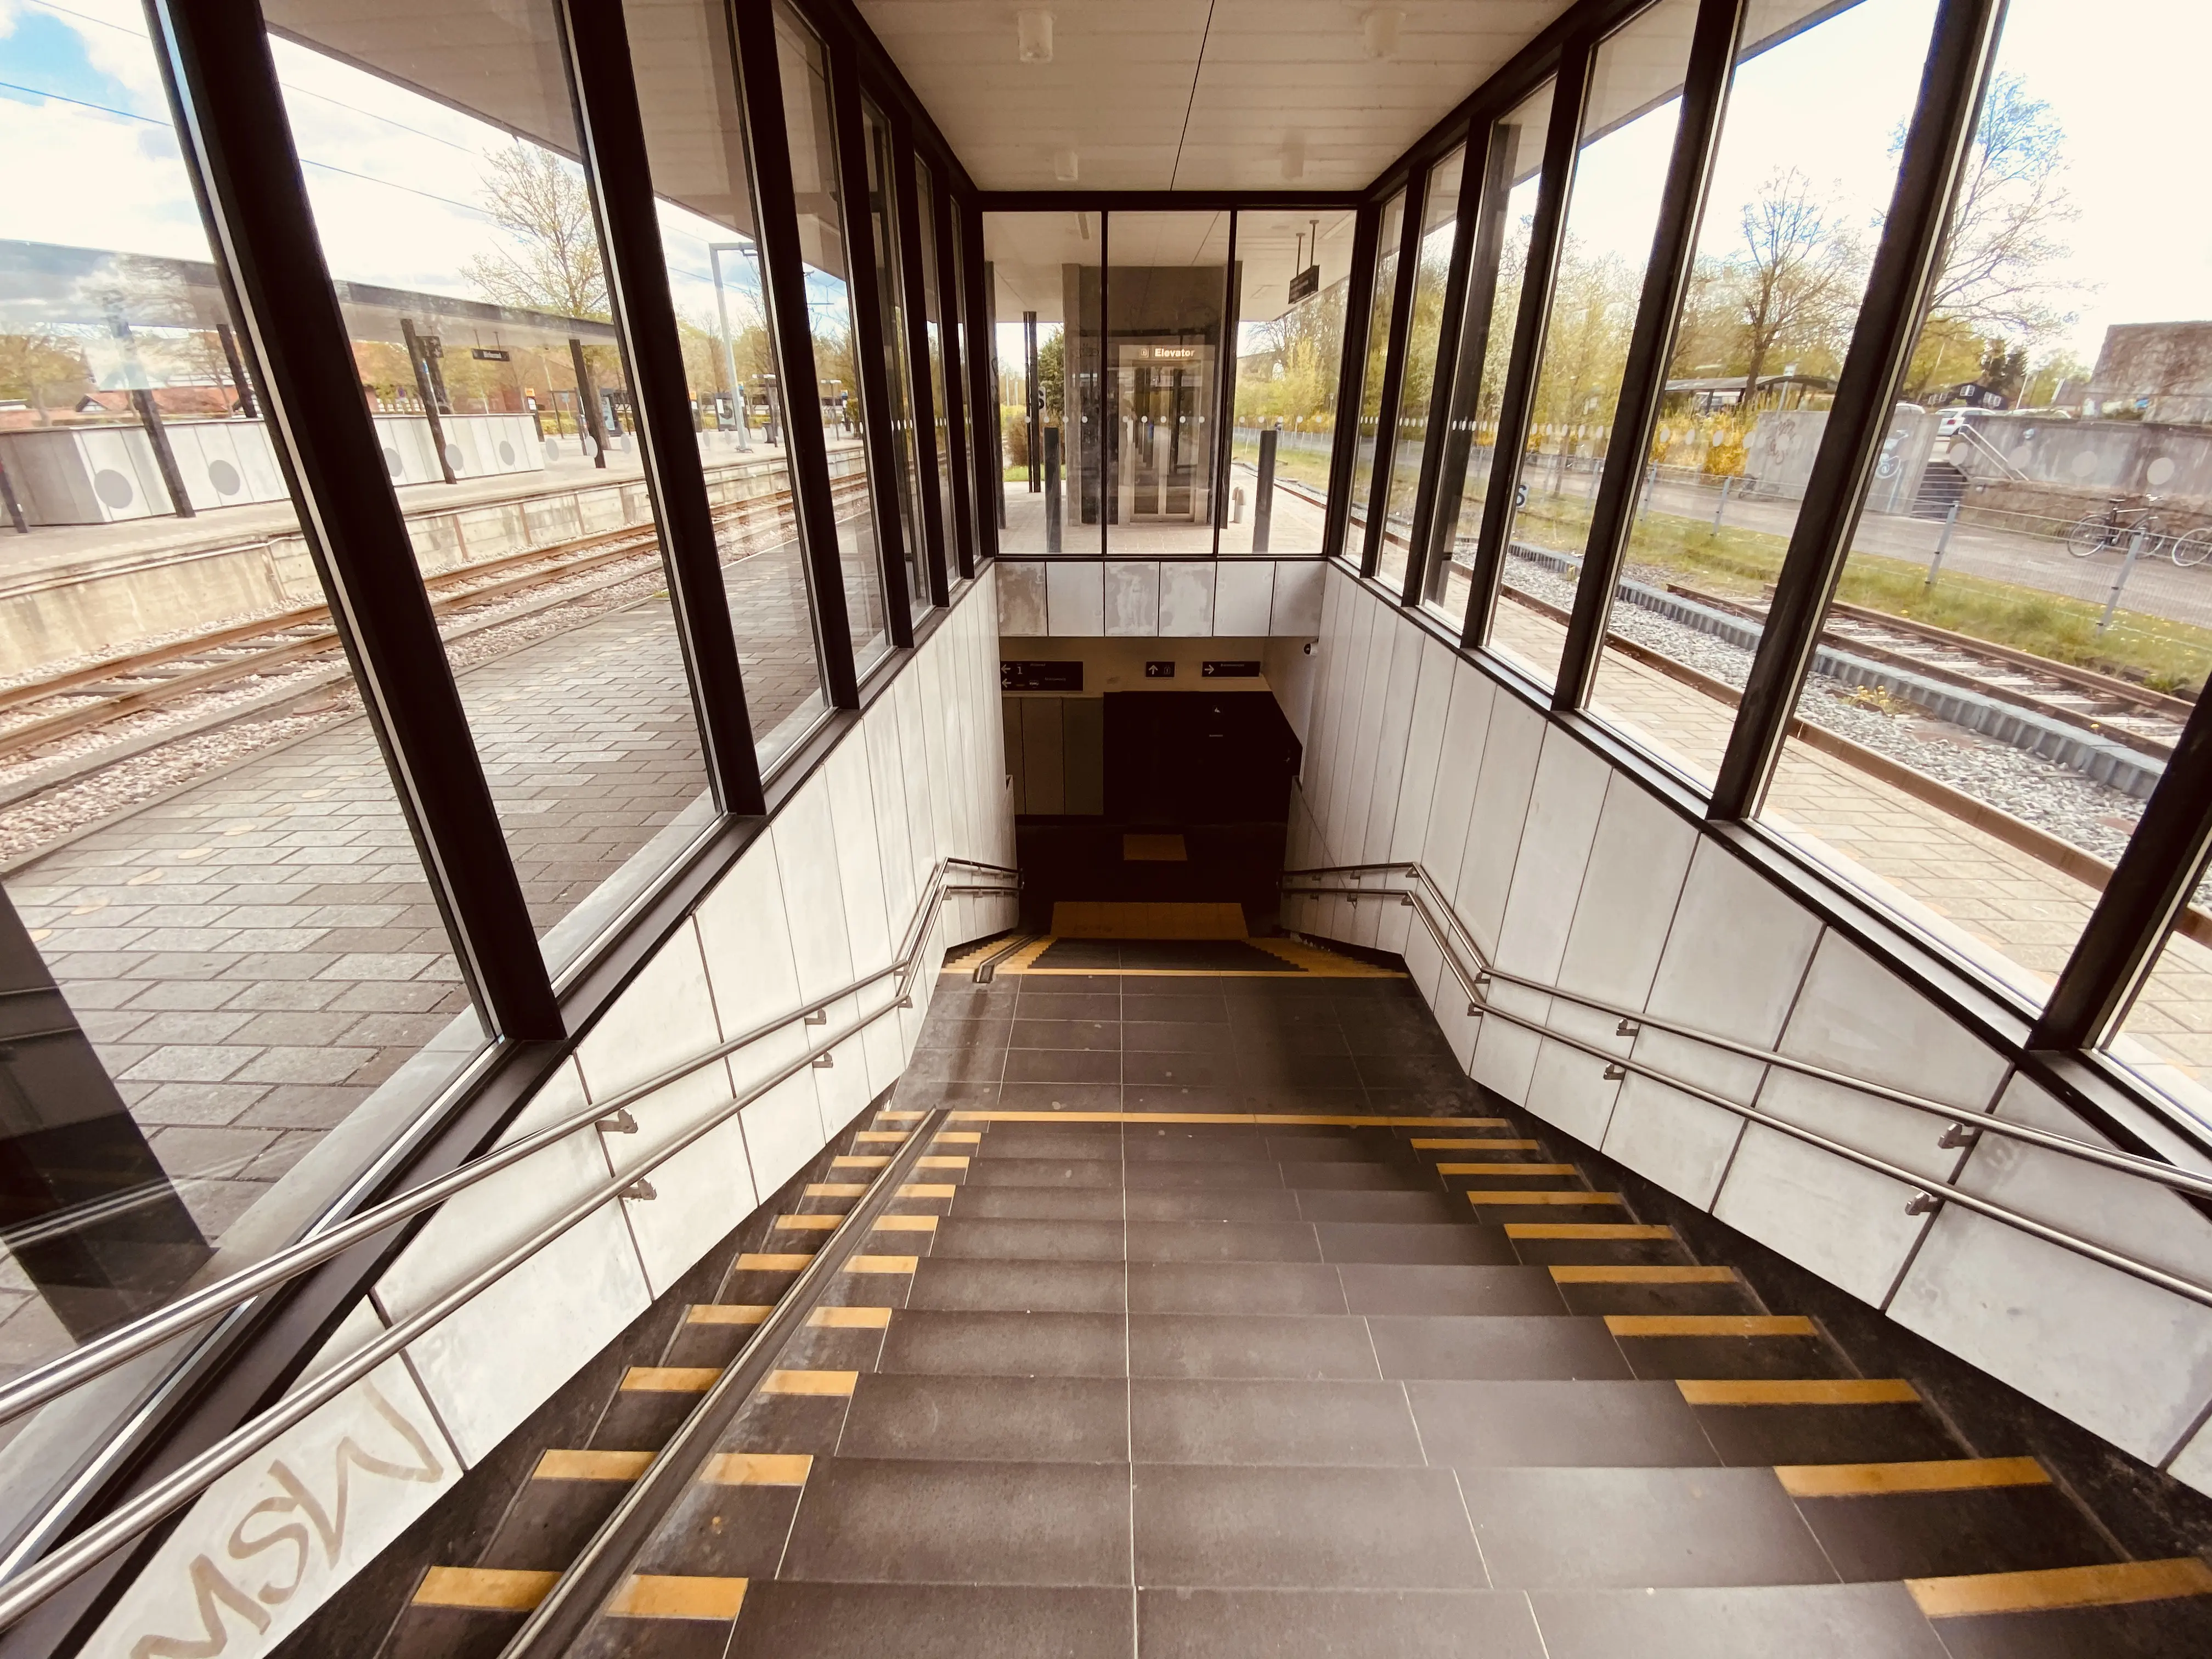 Billede af Birkerød Station.